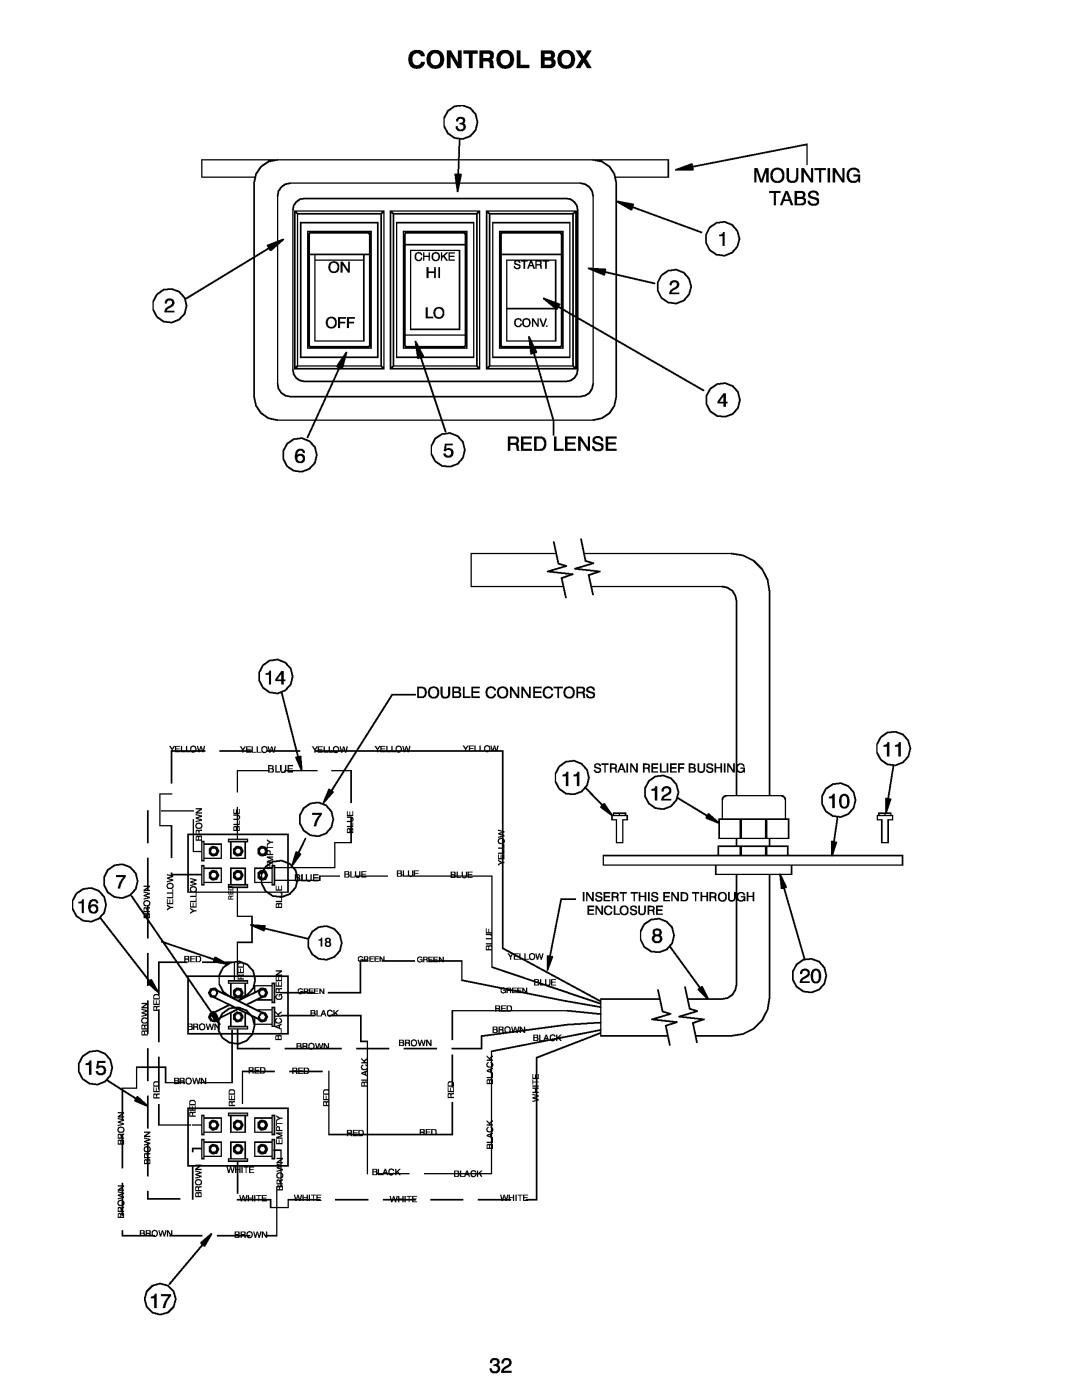 Power Acoustik M-1044, M-944, M-940 instruction manual Control Box 